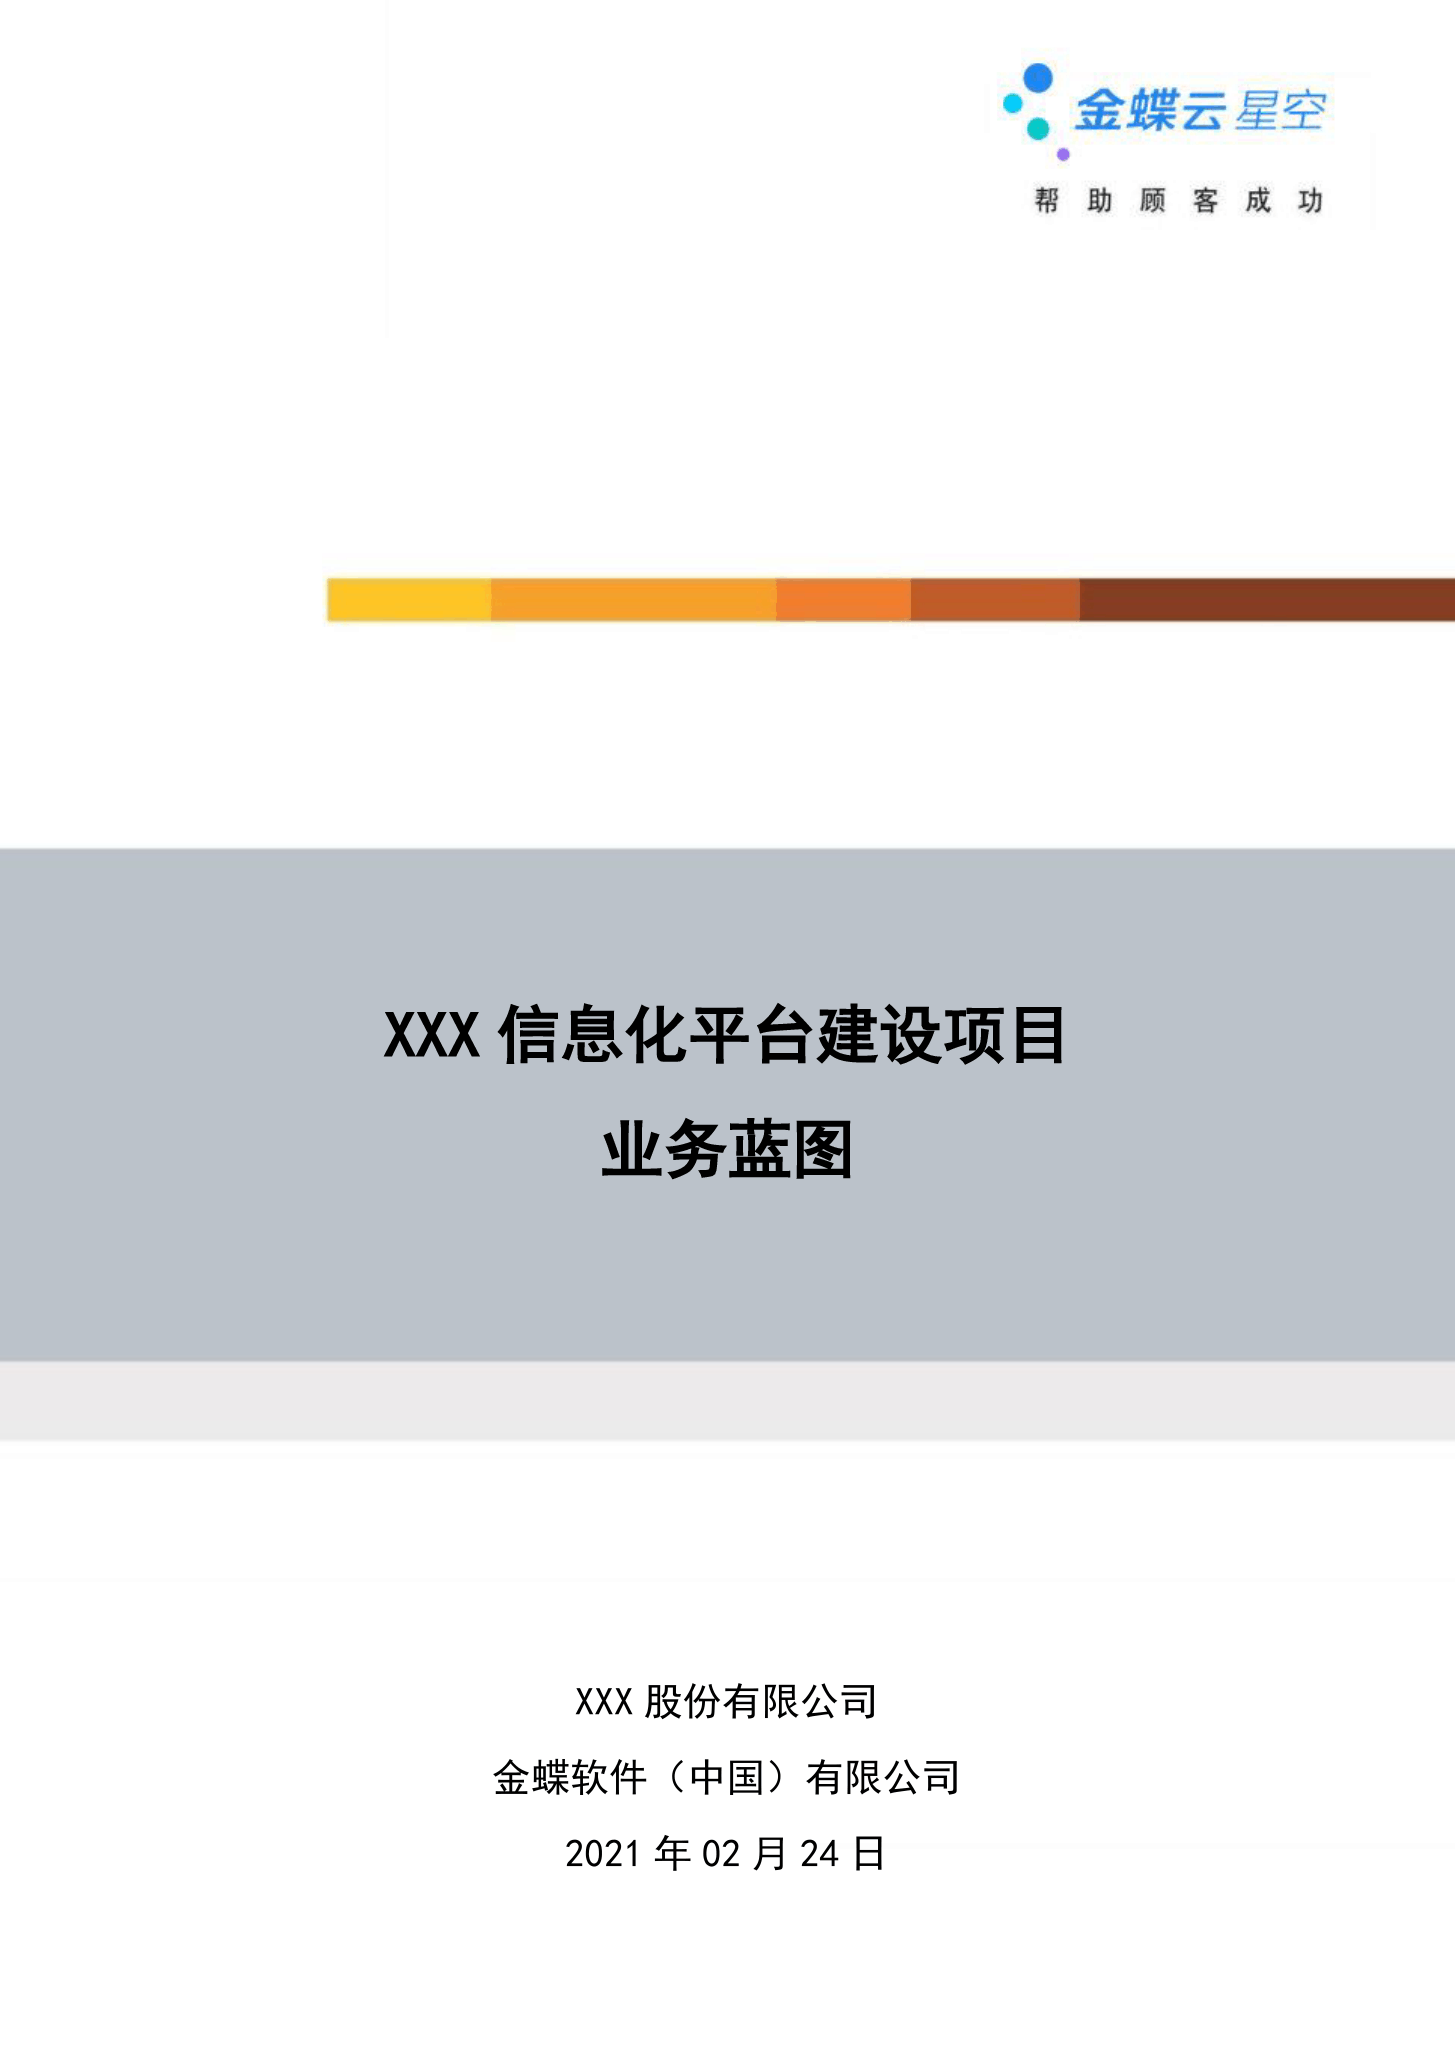 金蝶云社区-03 业务蓝图_模板